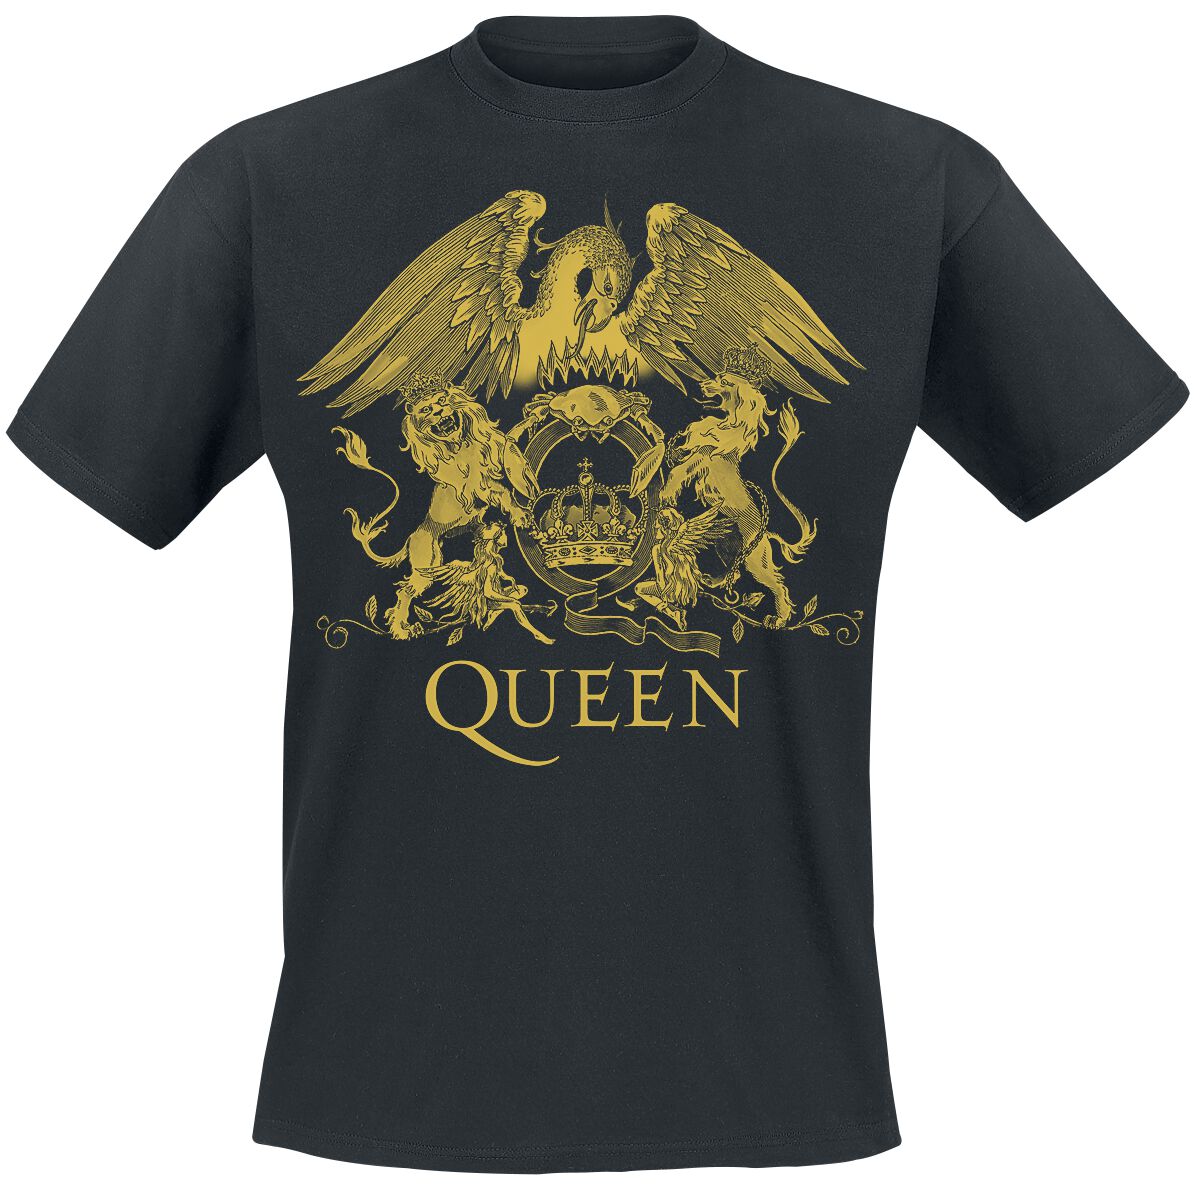 Queen T-Shirt - Classic Crest - S bis 3XL - für Männer - Größe M - schwarz  - Lizenziertes Merchandise!